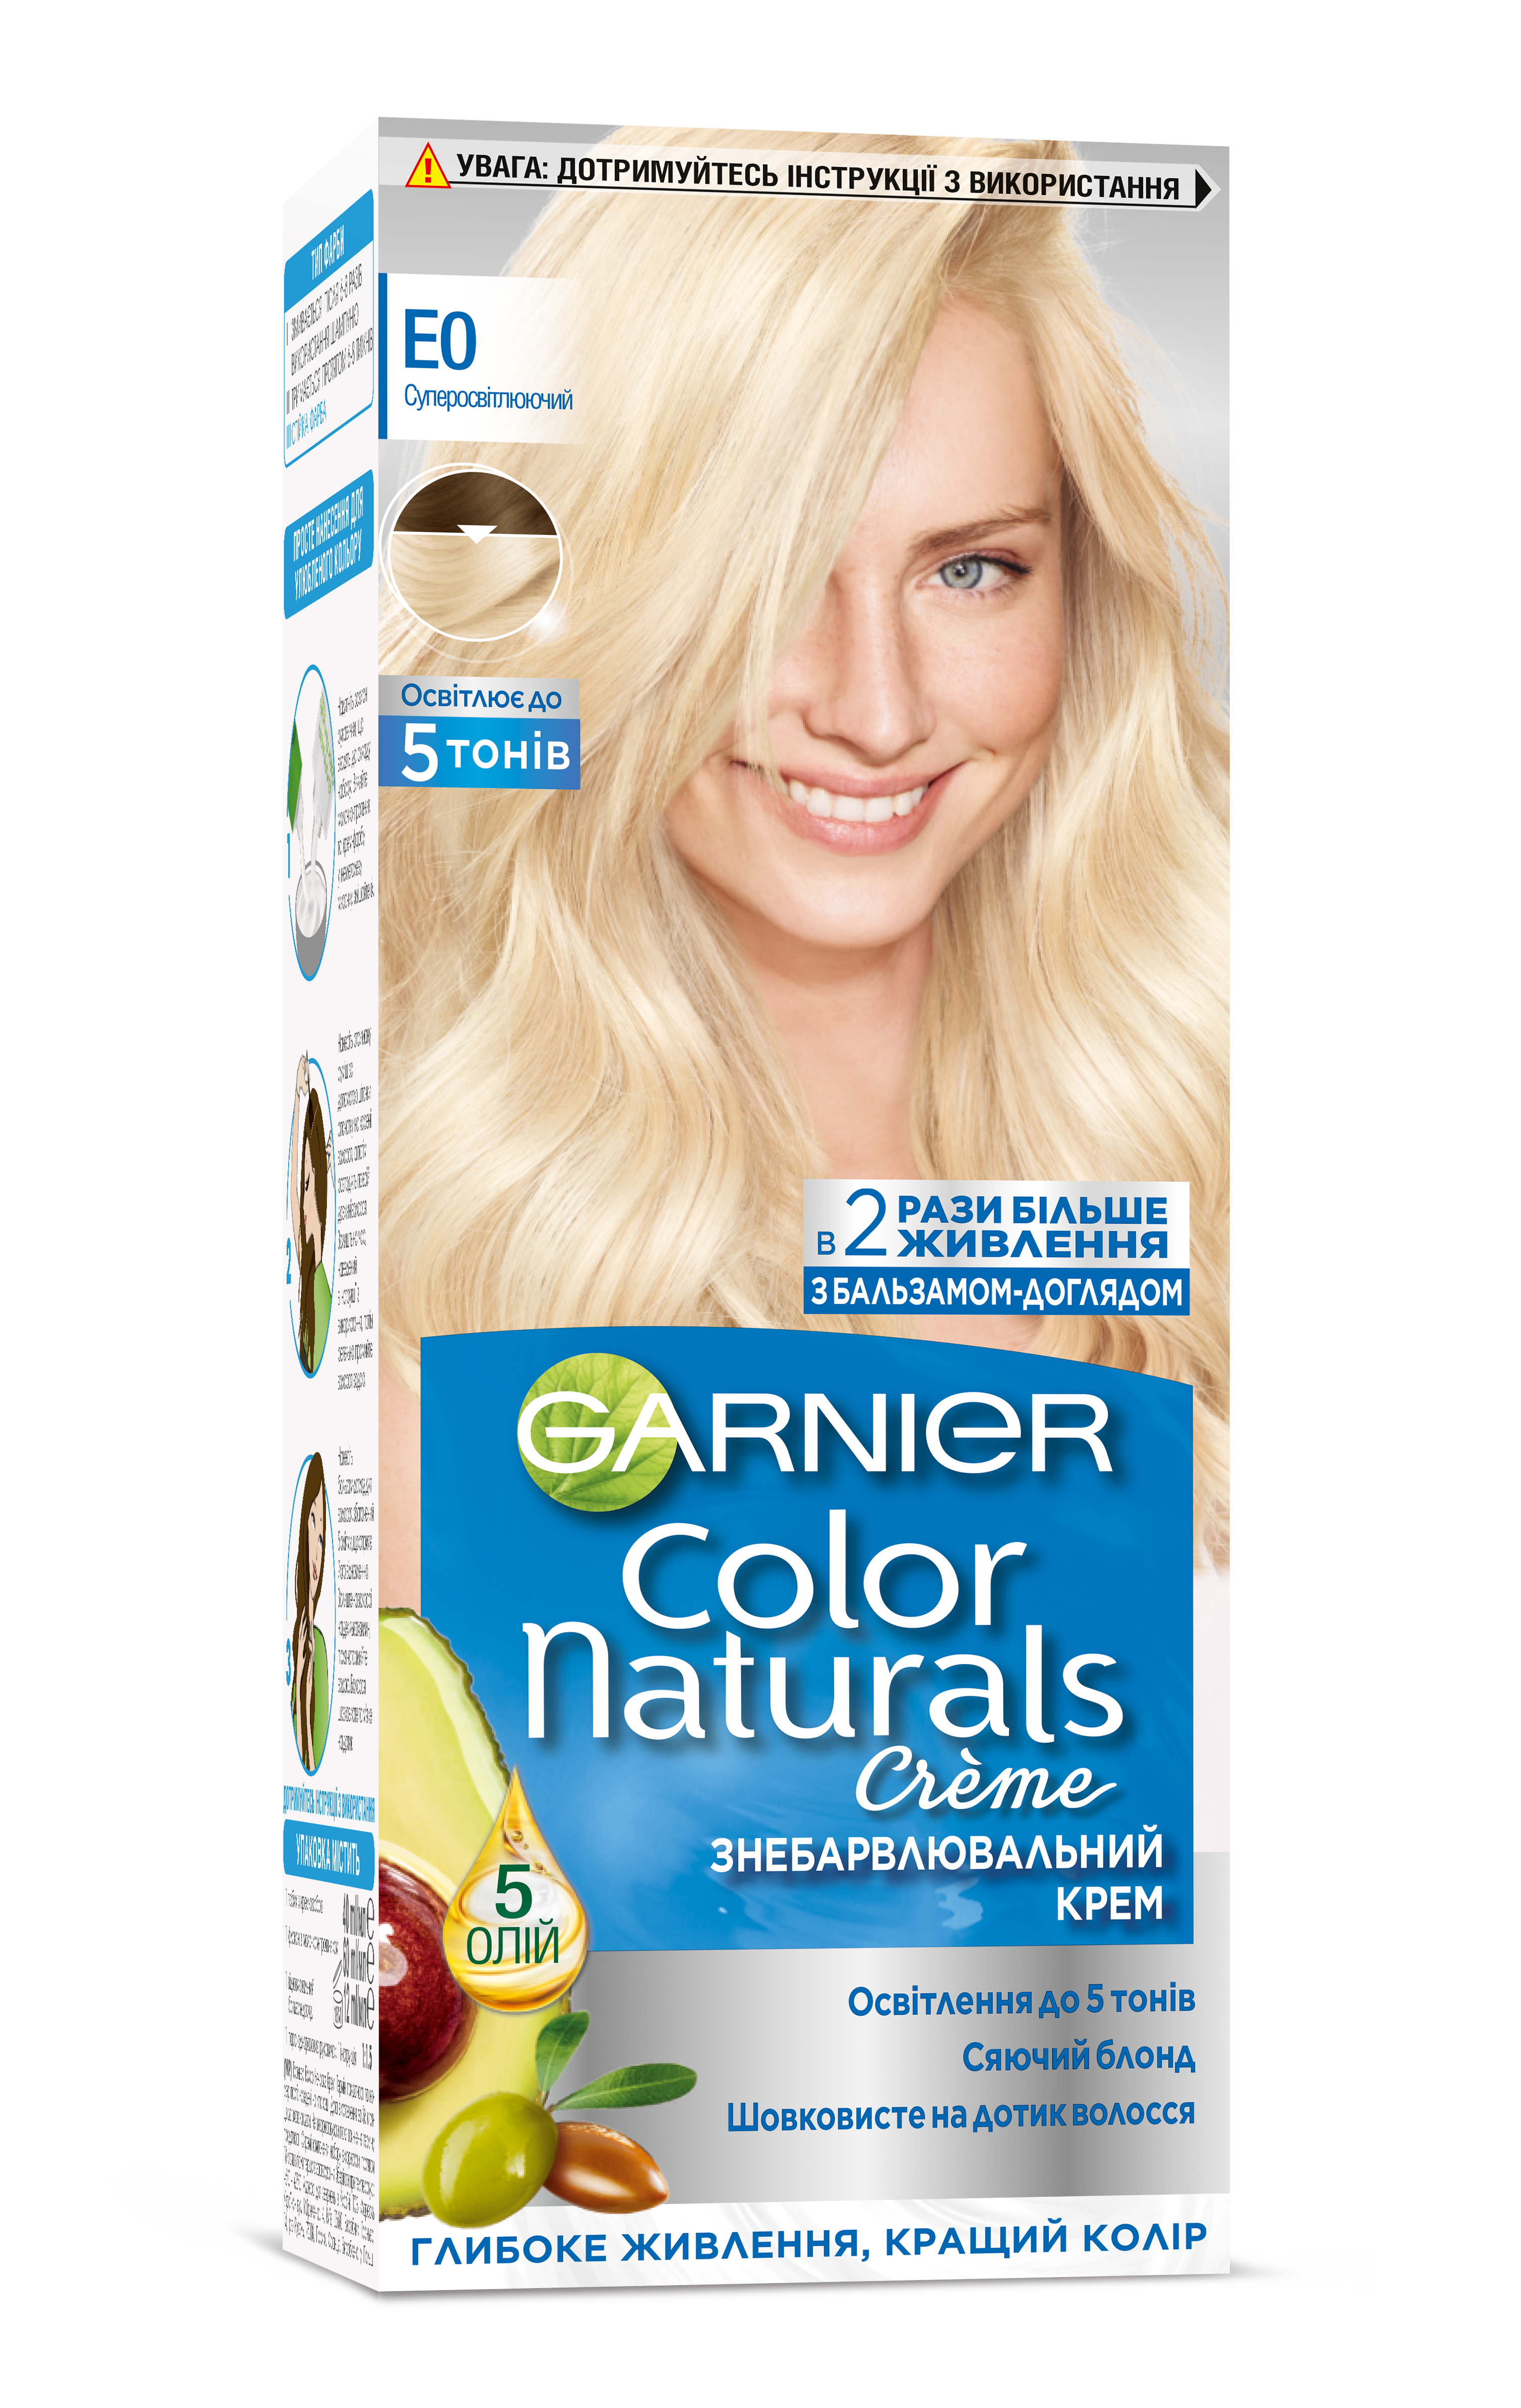 Краска для волос Garnier Color Naturals, тон E0 (Супер-осветительный), 110 мл (C2264025) - фото 1